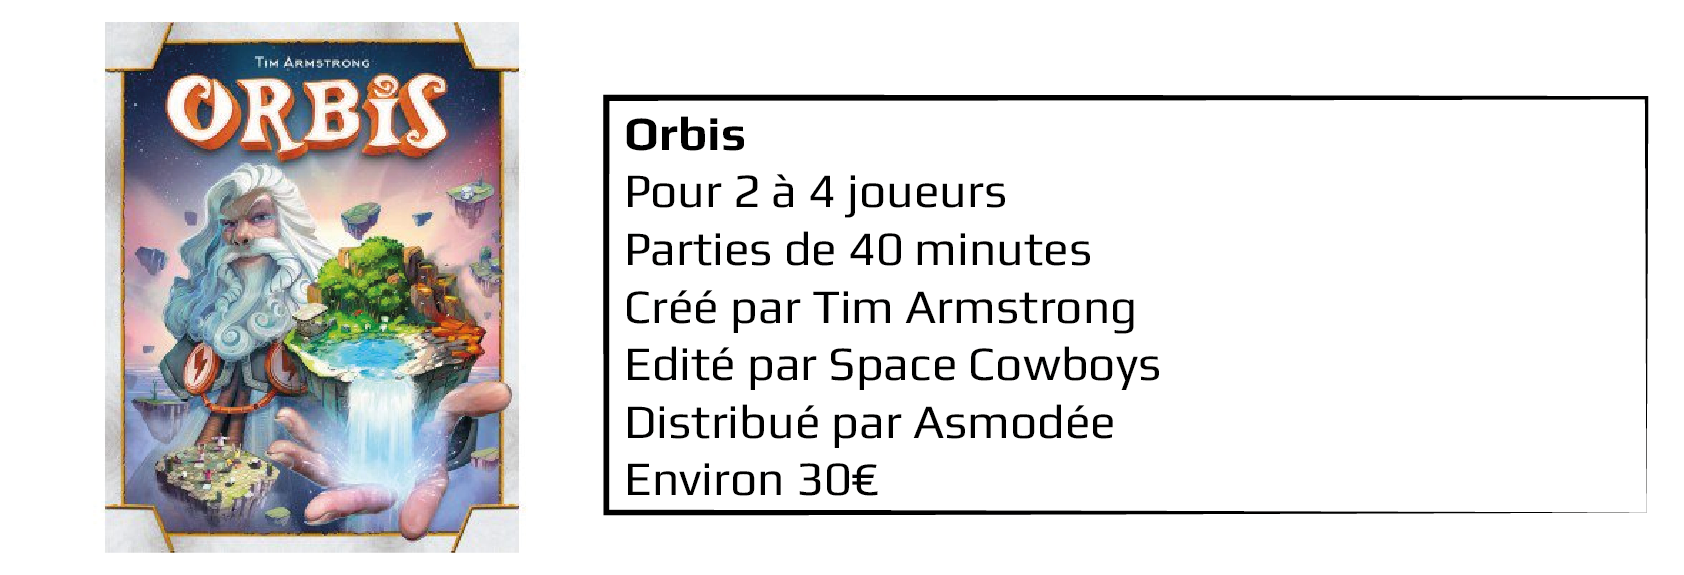 Orbis 4